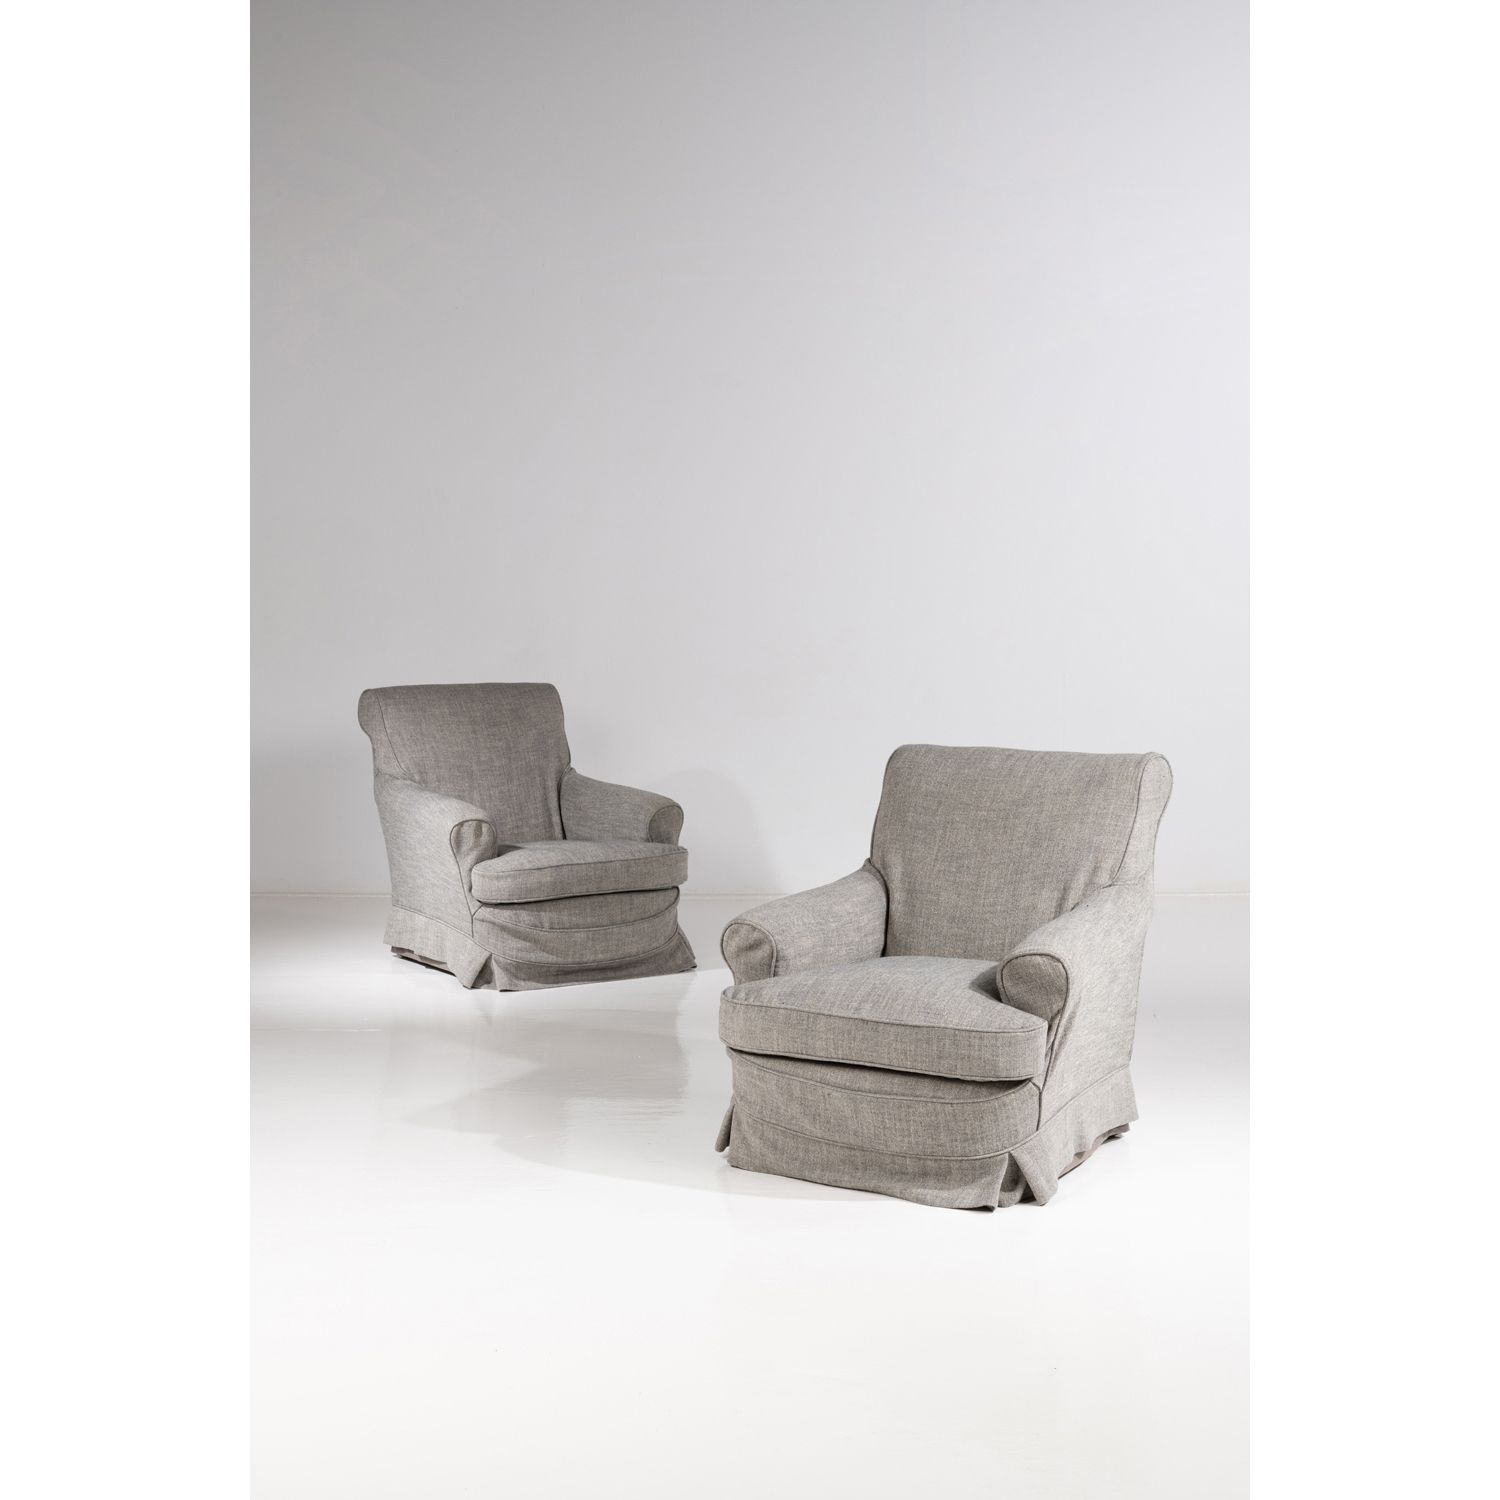 Null Modernes Werk (20. Jahrhundert)

Paar Sessel, um 1980

Textile Polsterung

&hellip;